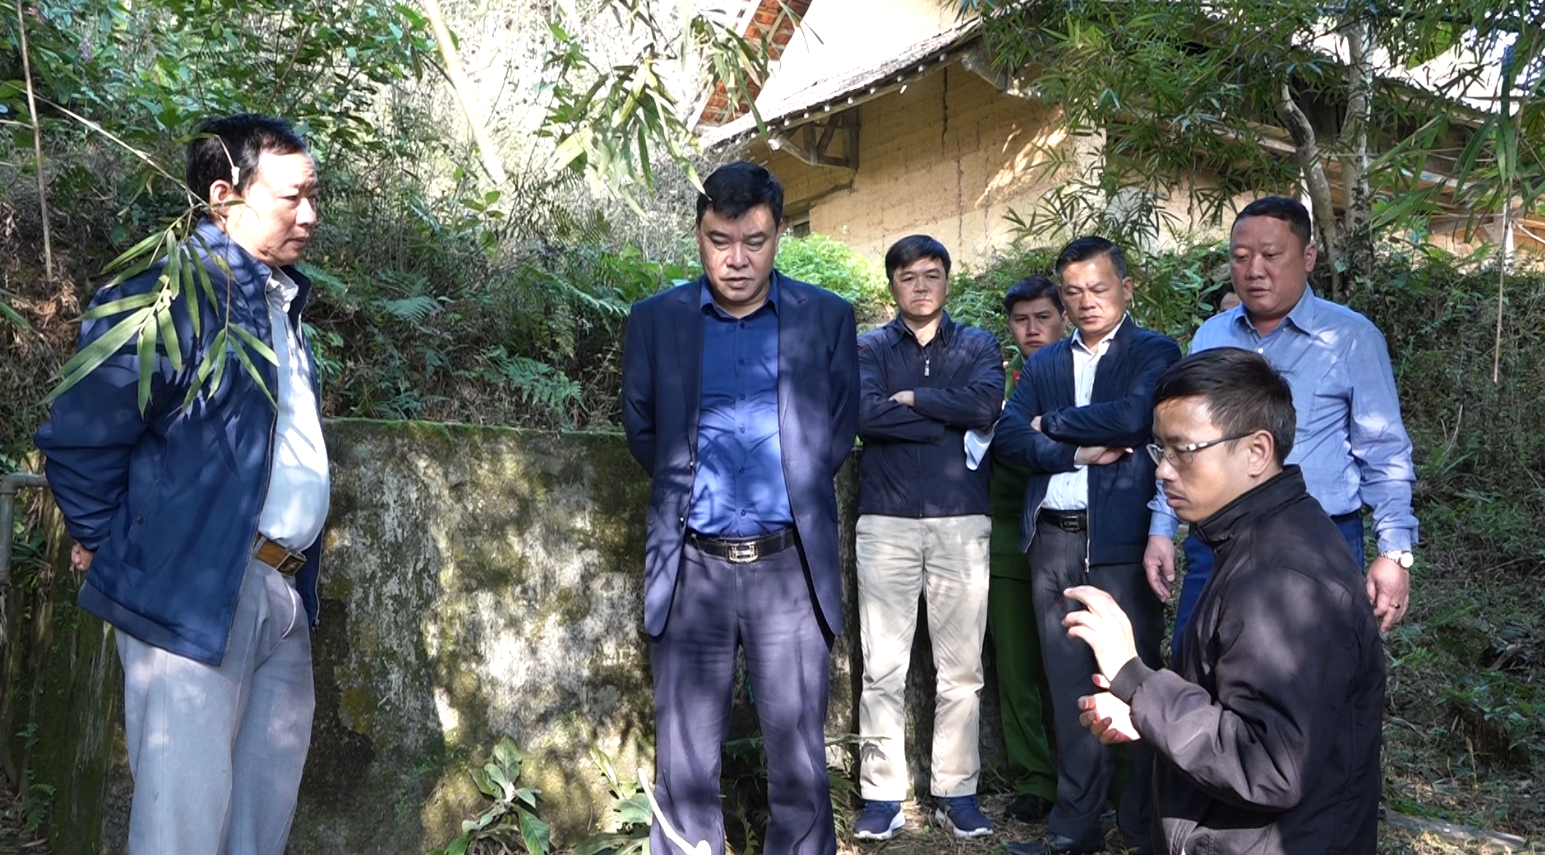 Phó Chủ tịch Thường trực UBND tỉnh Hoàng Gia Long khảo sát công trình cấp nước sinh hoạt thuộc diện phải thanh lý tại huyện Quản Bạ.